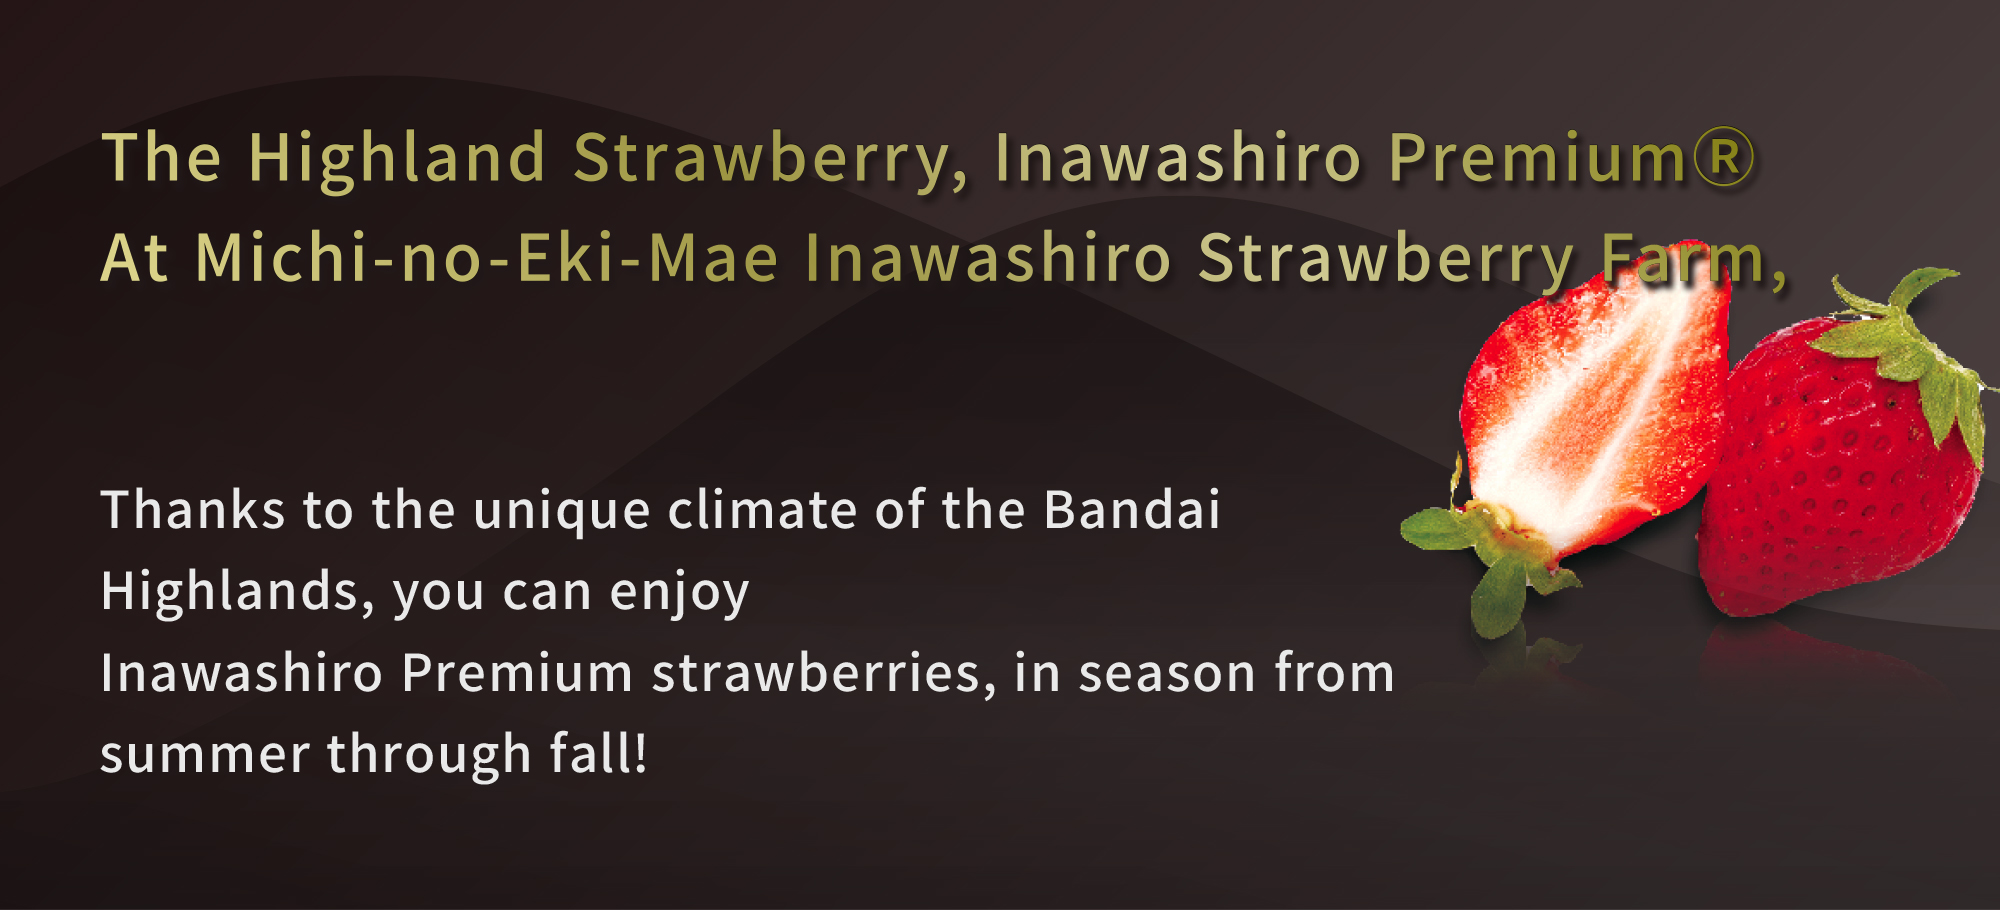 The Highland Strawberry, Inawashiro Premium® Michi-no-Eki-Mae, Inawshiro Strawberry Farm